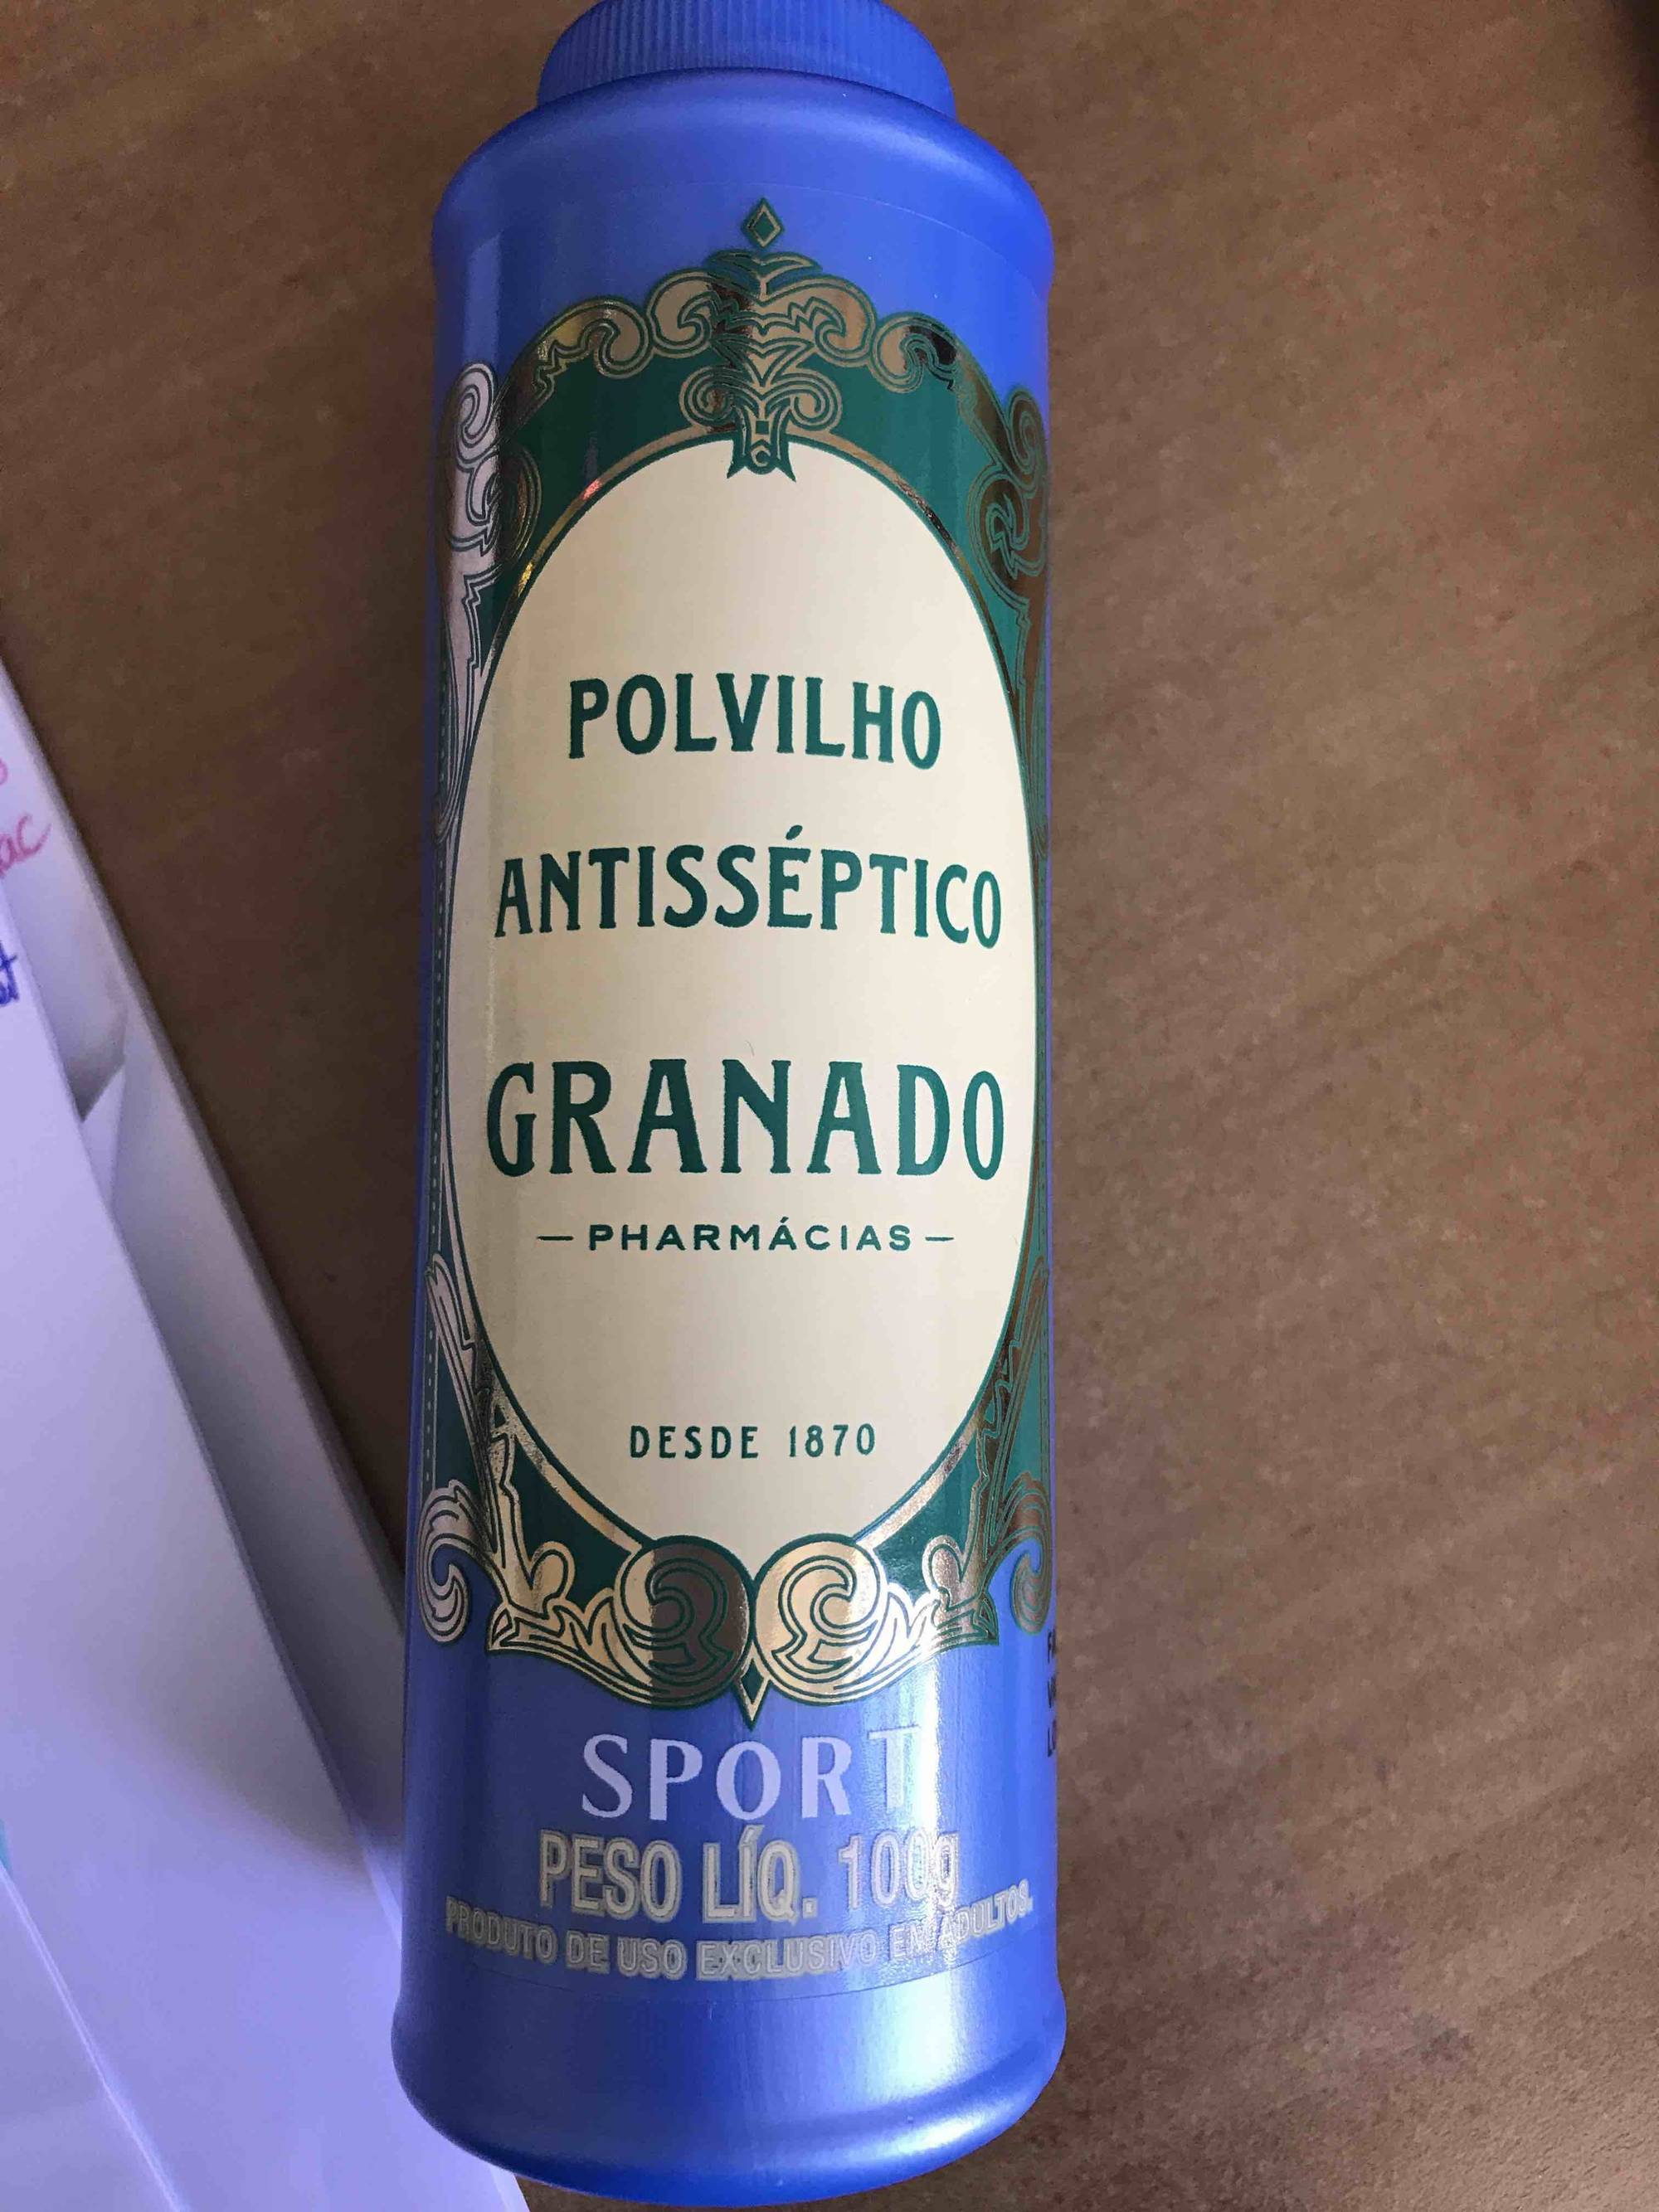 GRANADO - Polvilho antisséptico sport